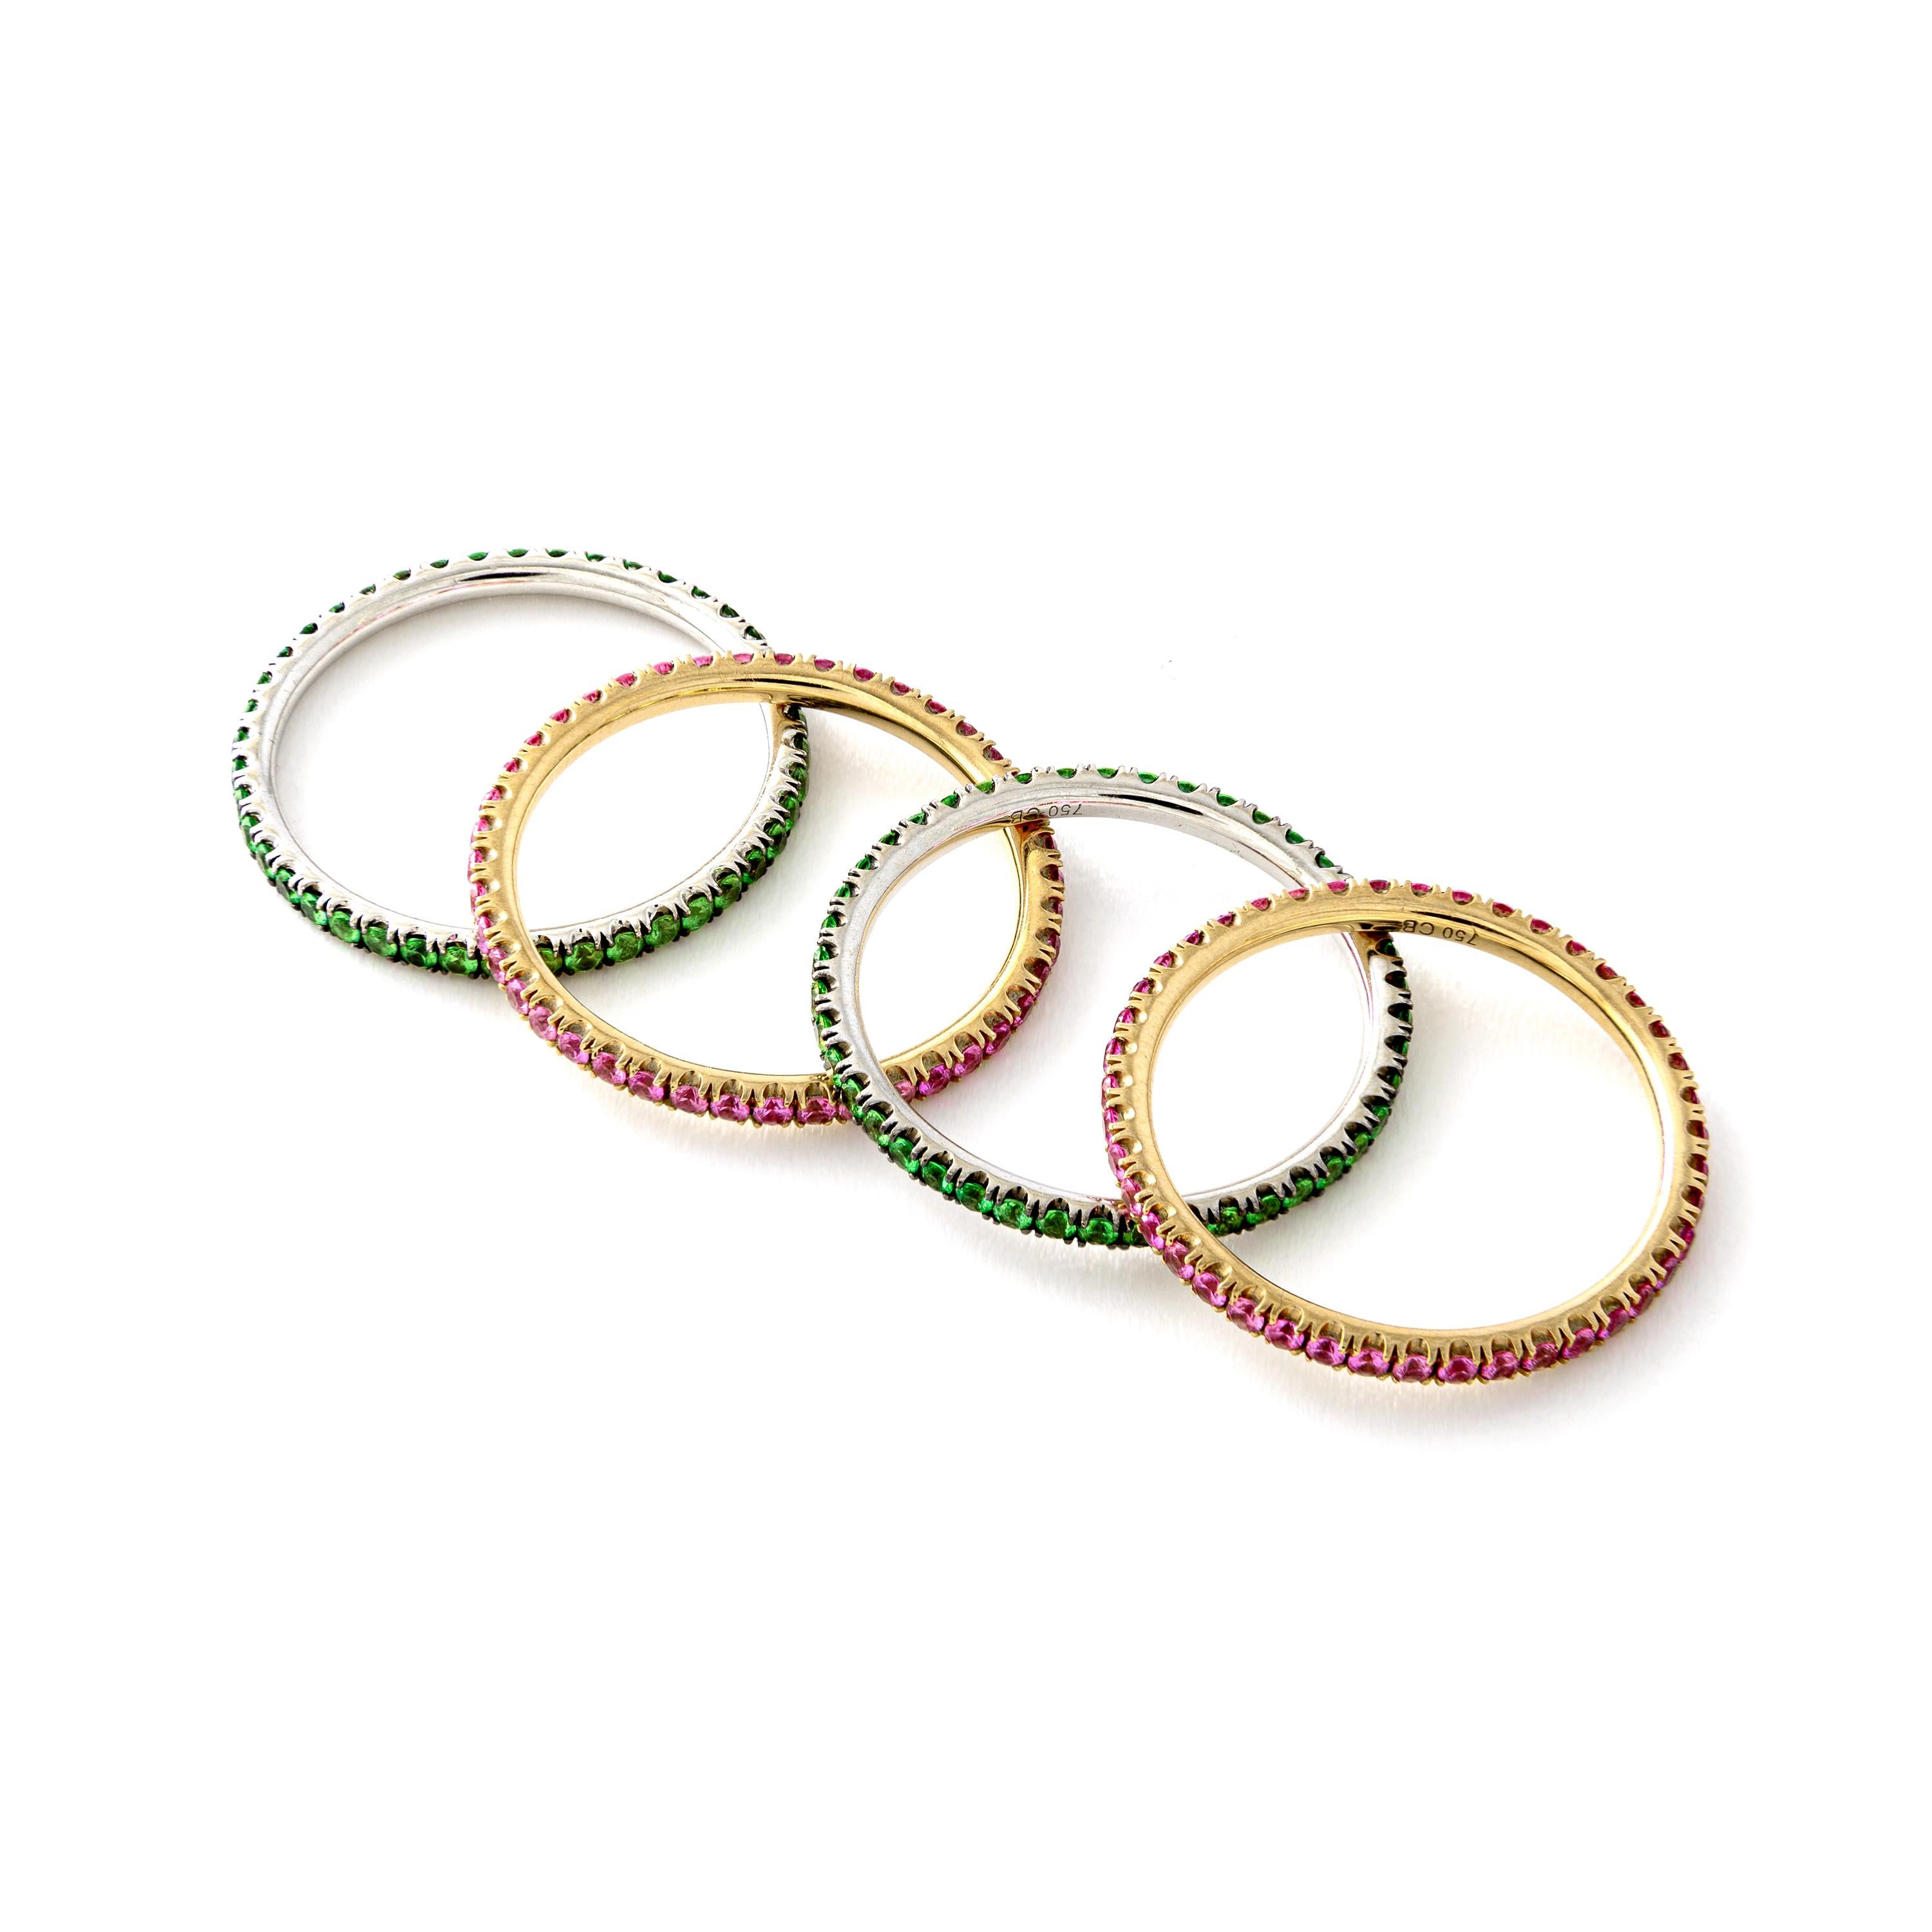 Vier grüne Granate und rosafarbene Saphire auf Ringen aus Weiß- bzw. Roségold.
Zeitgenössisch.
Größe: 7 US.

